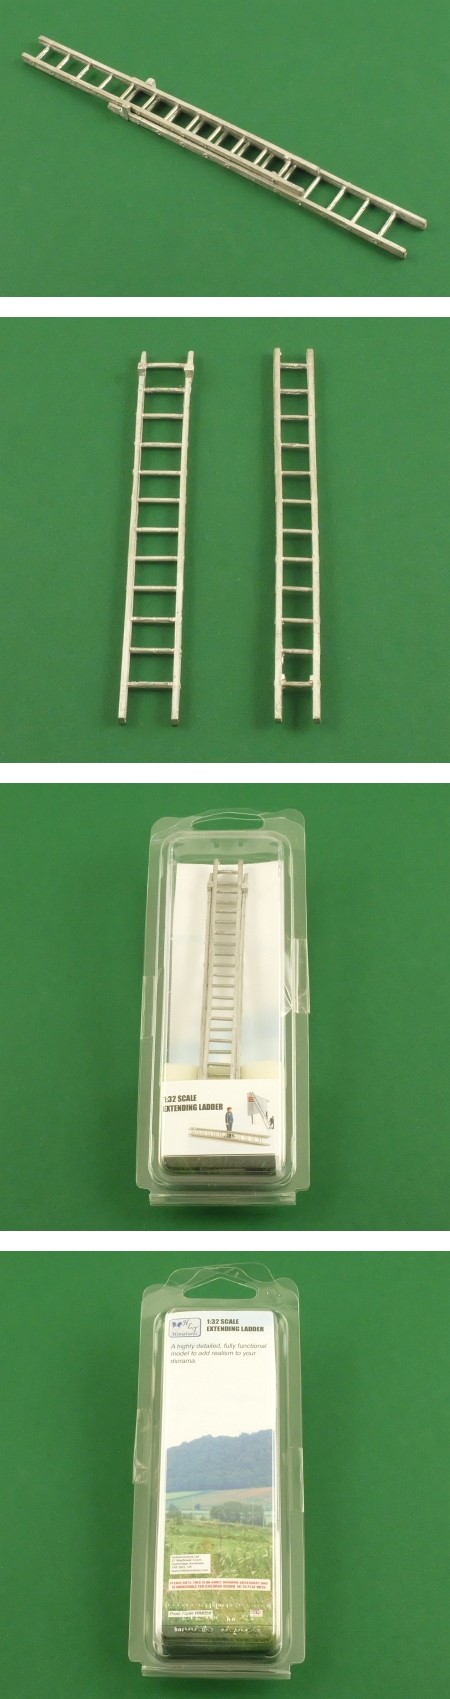 HLT Miniatures WM058 Extending Ladder